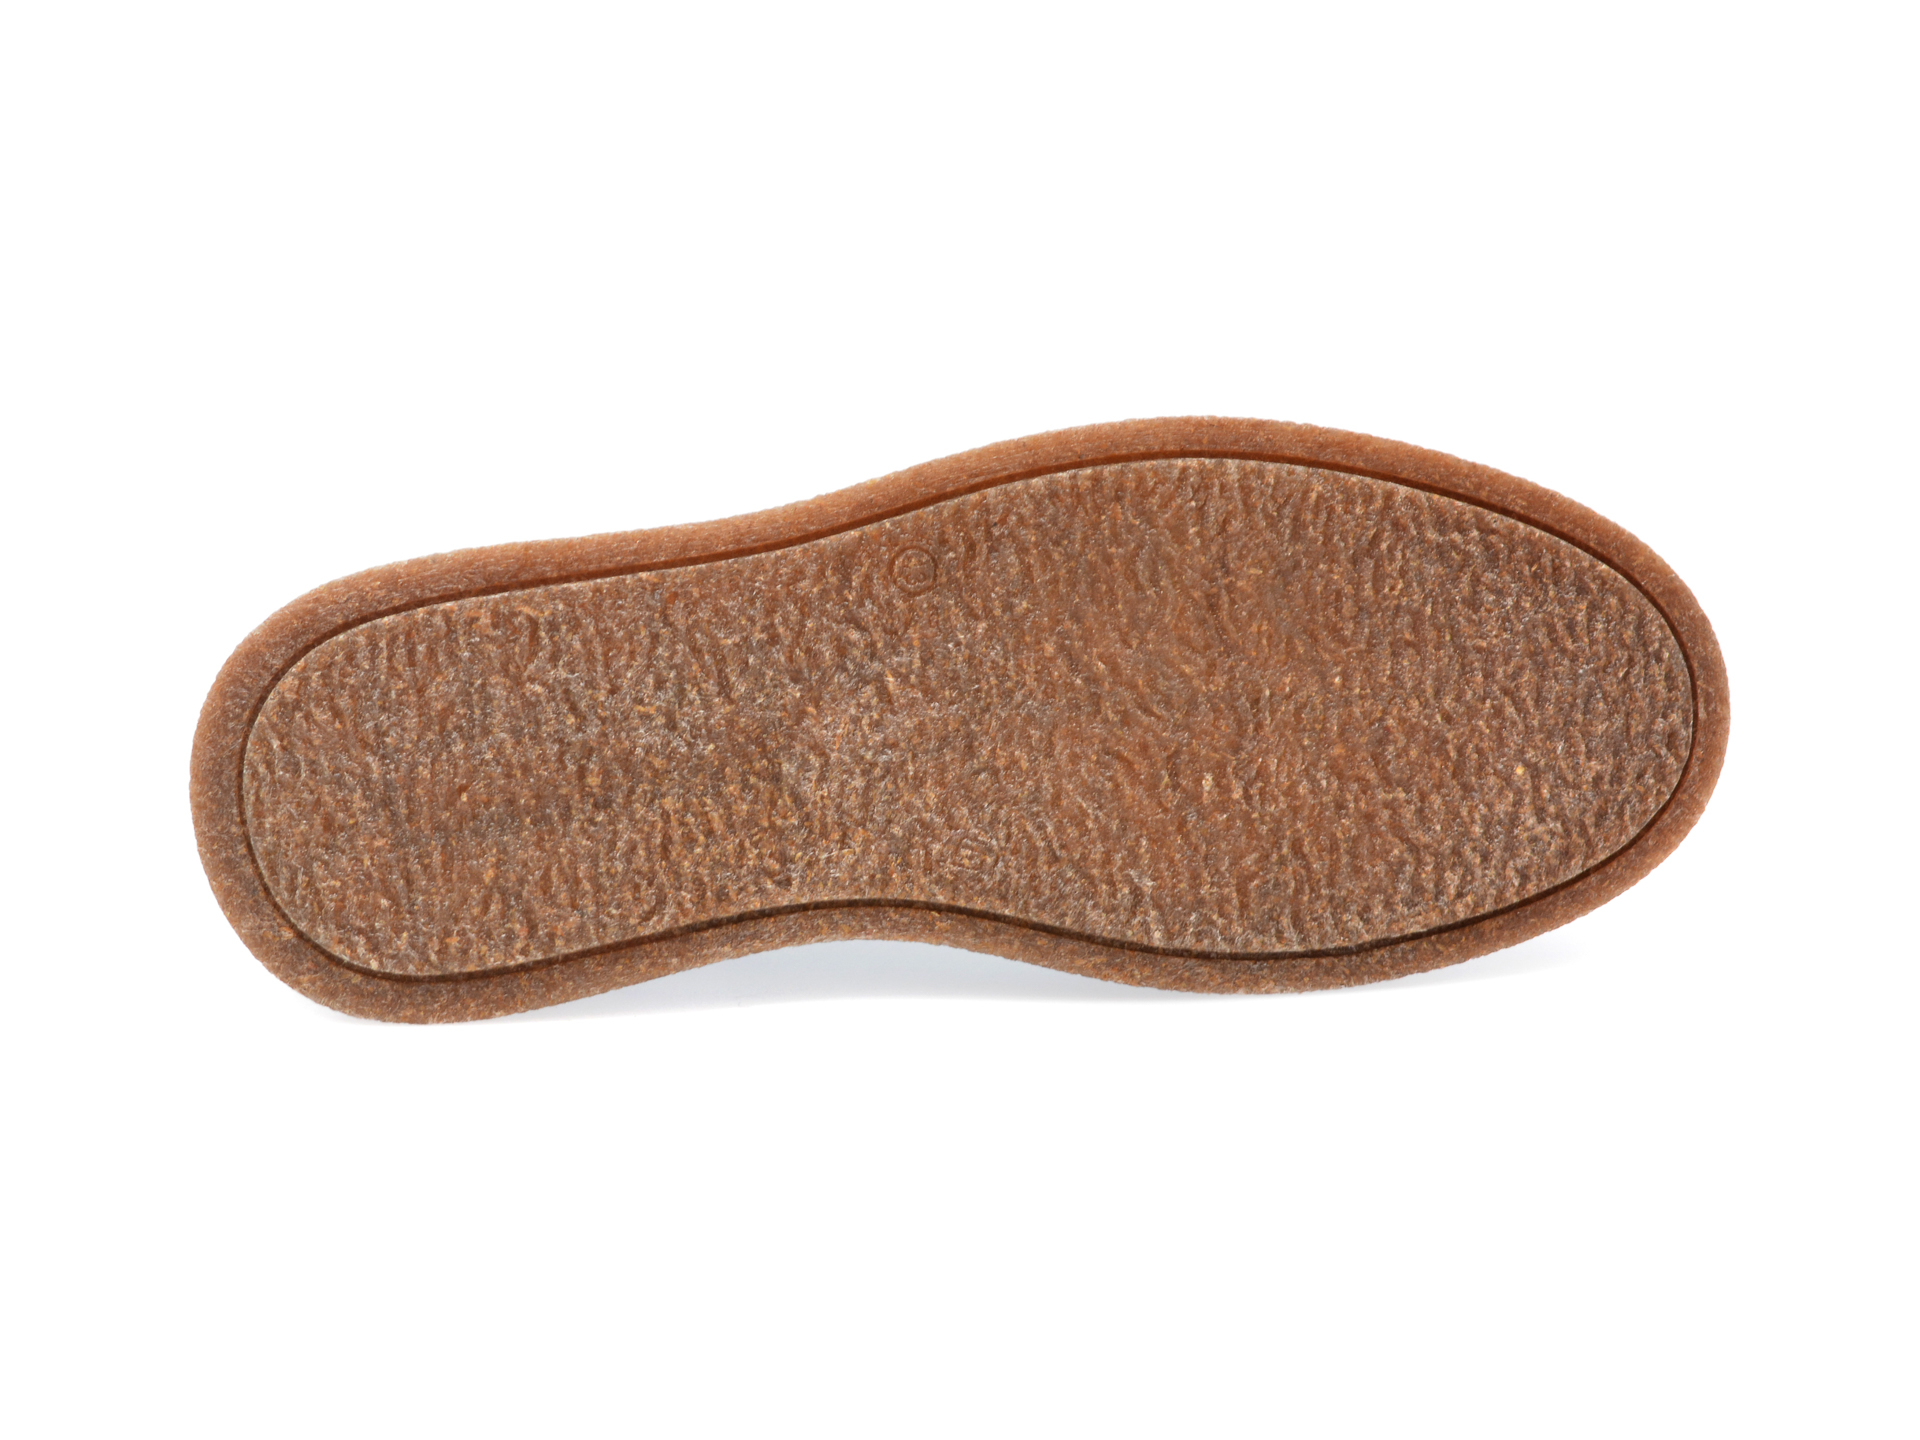 Pantofi AXXELLL maro, AYK002, din piele naturala